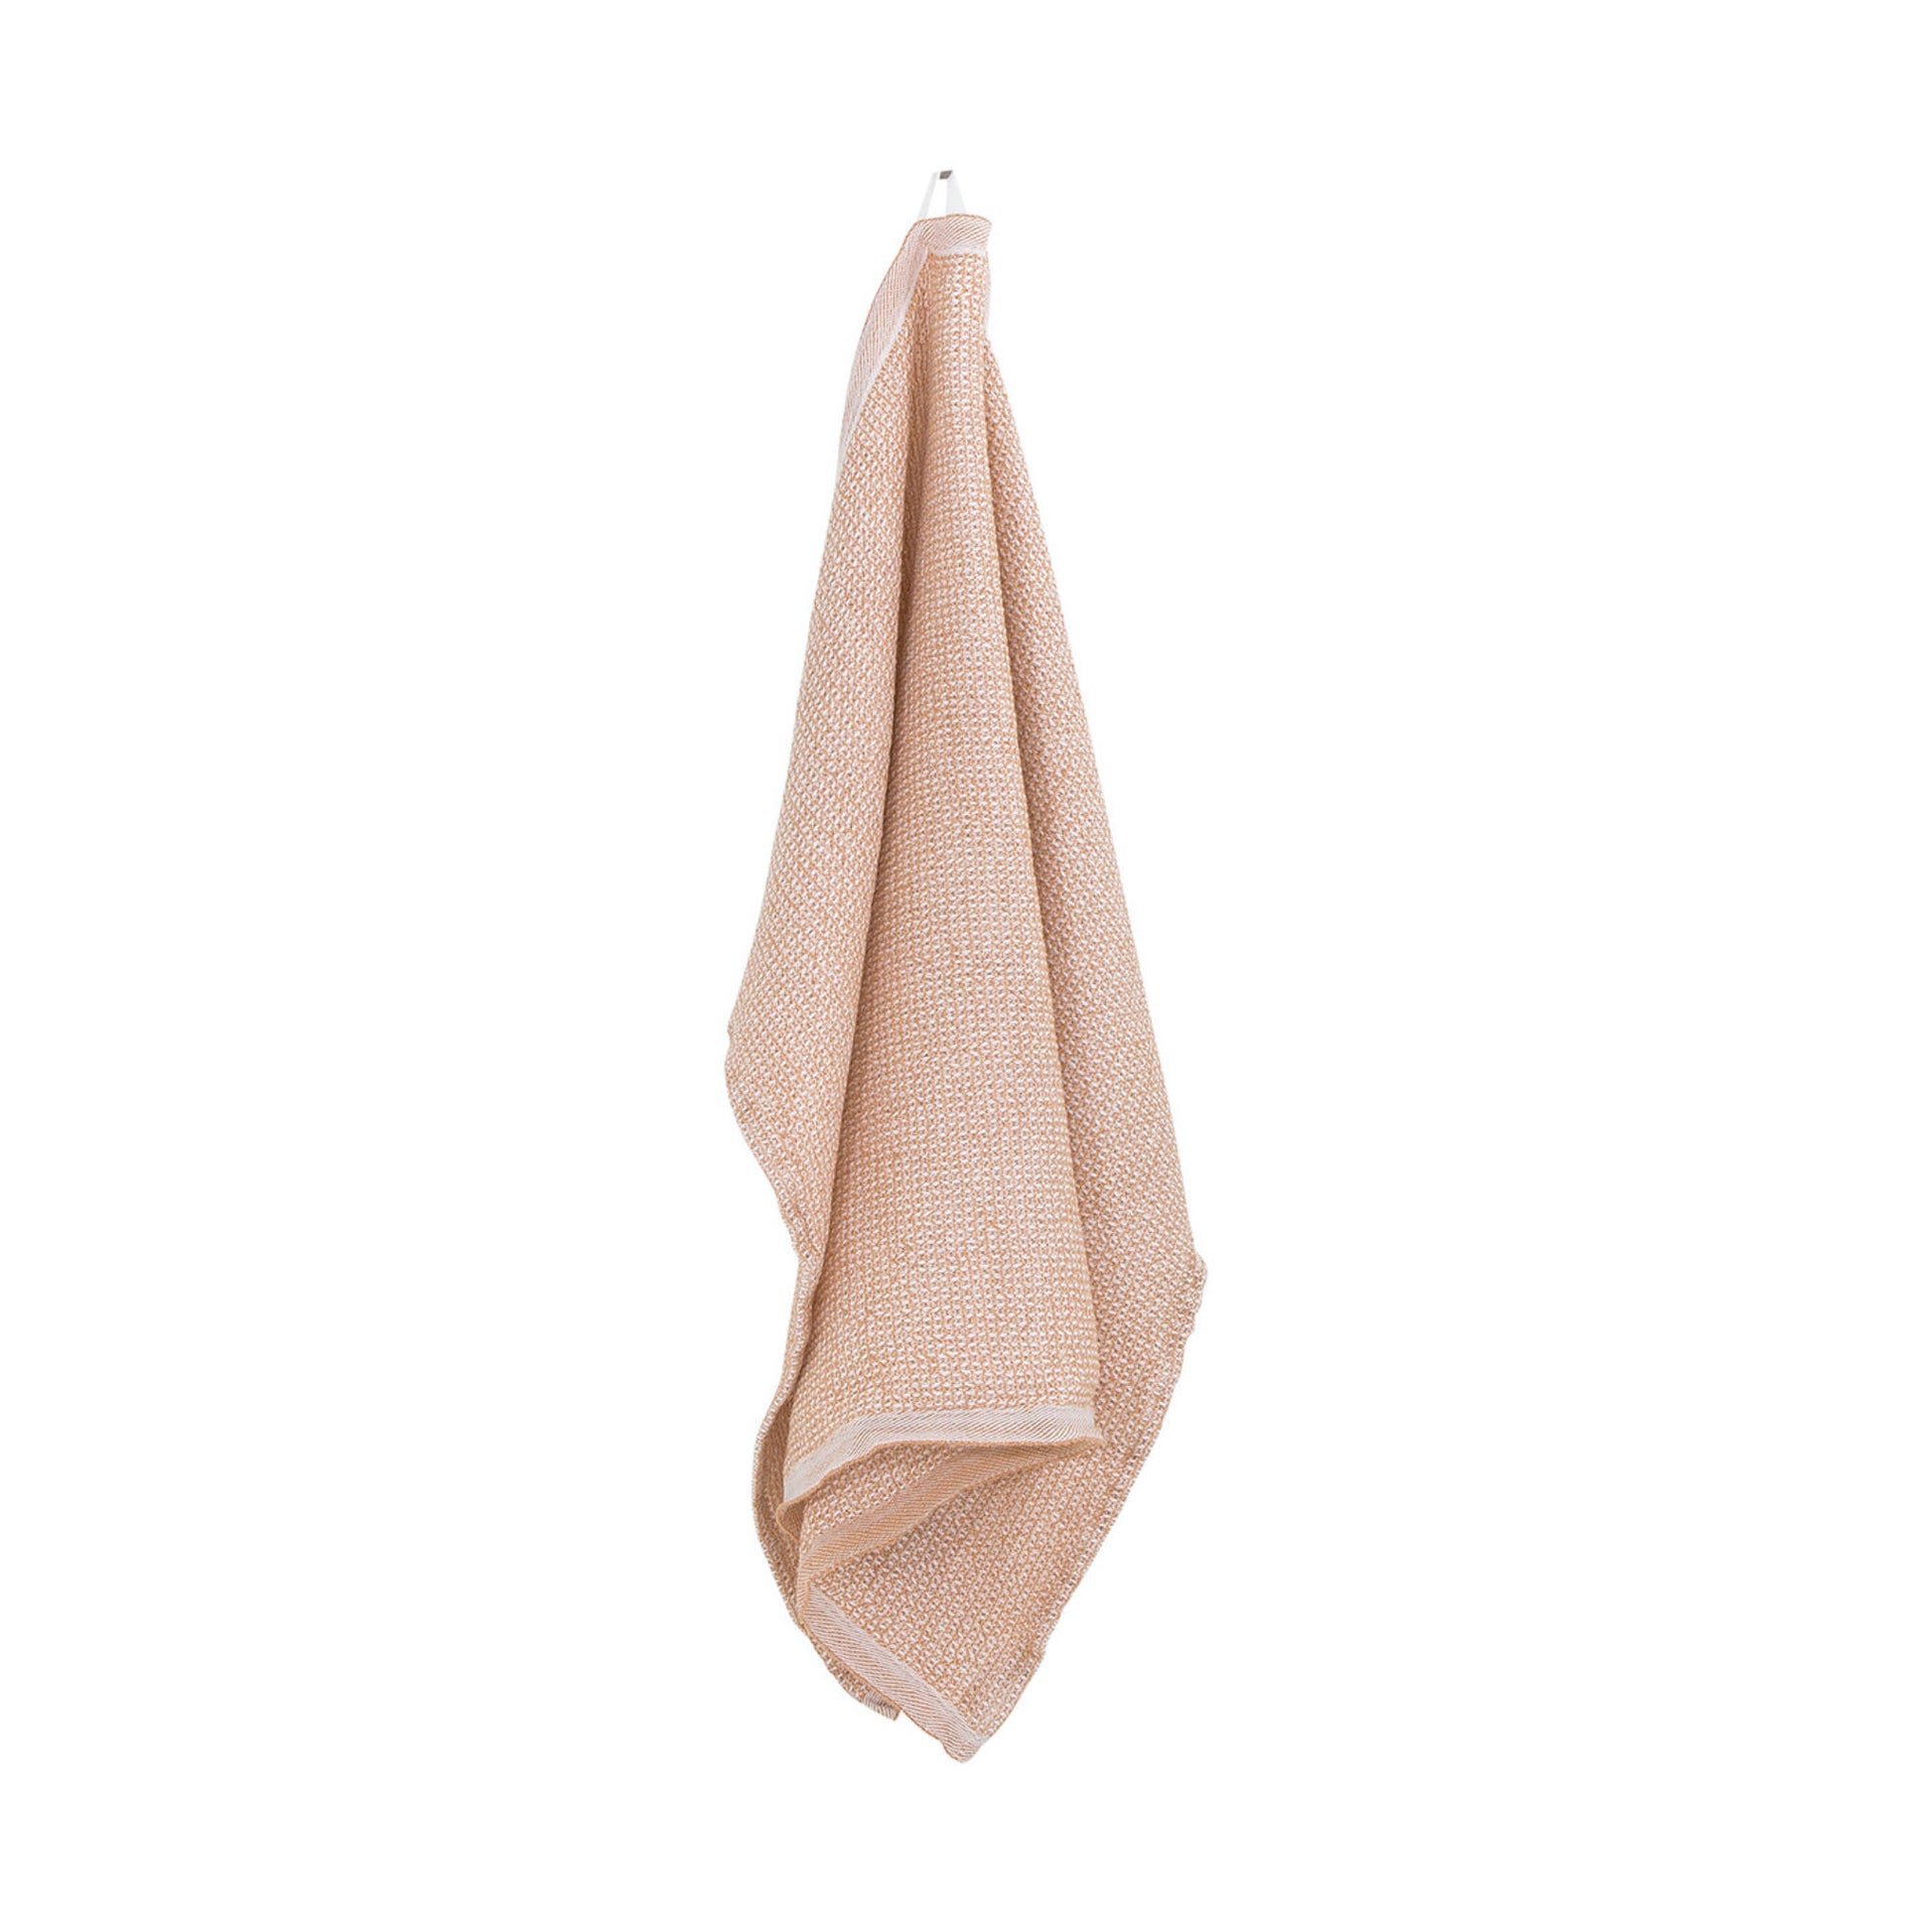 Terva Towel i White/Cinnamon fra Lapuan Kankurit, 169 kr.